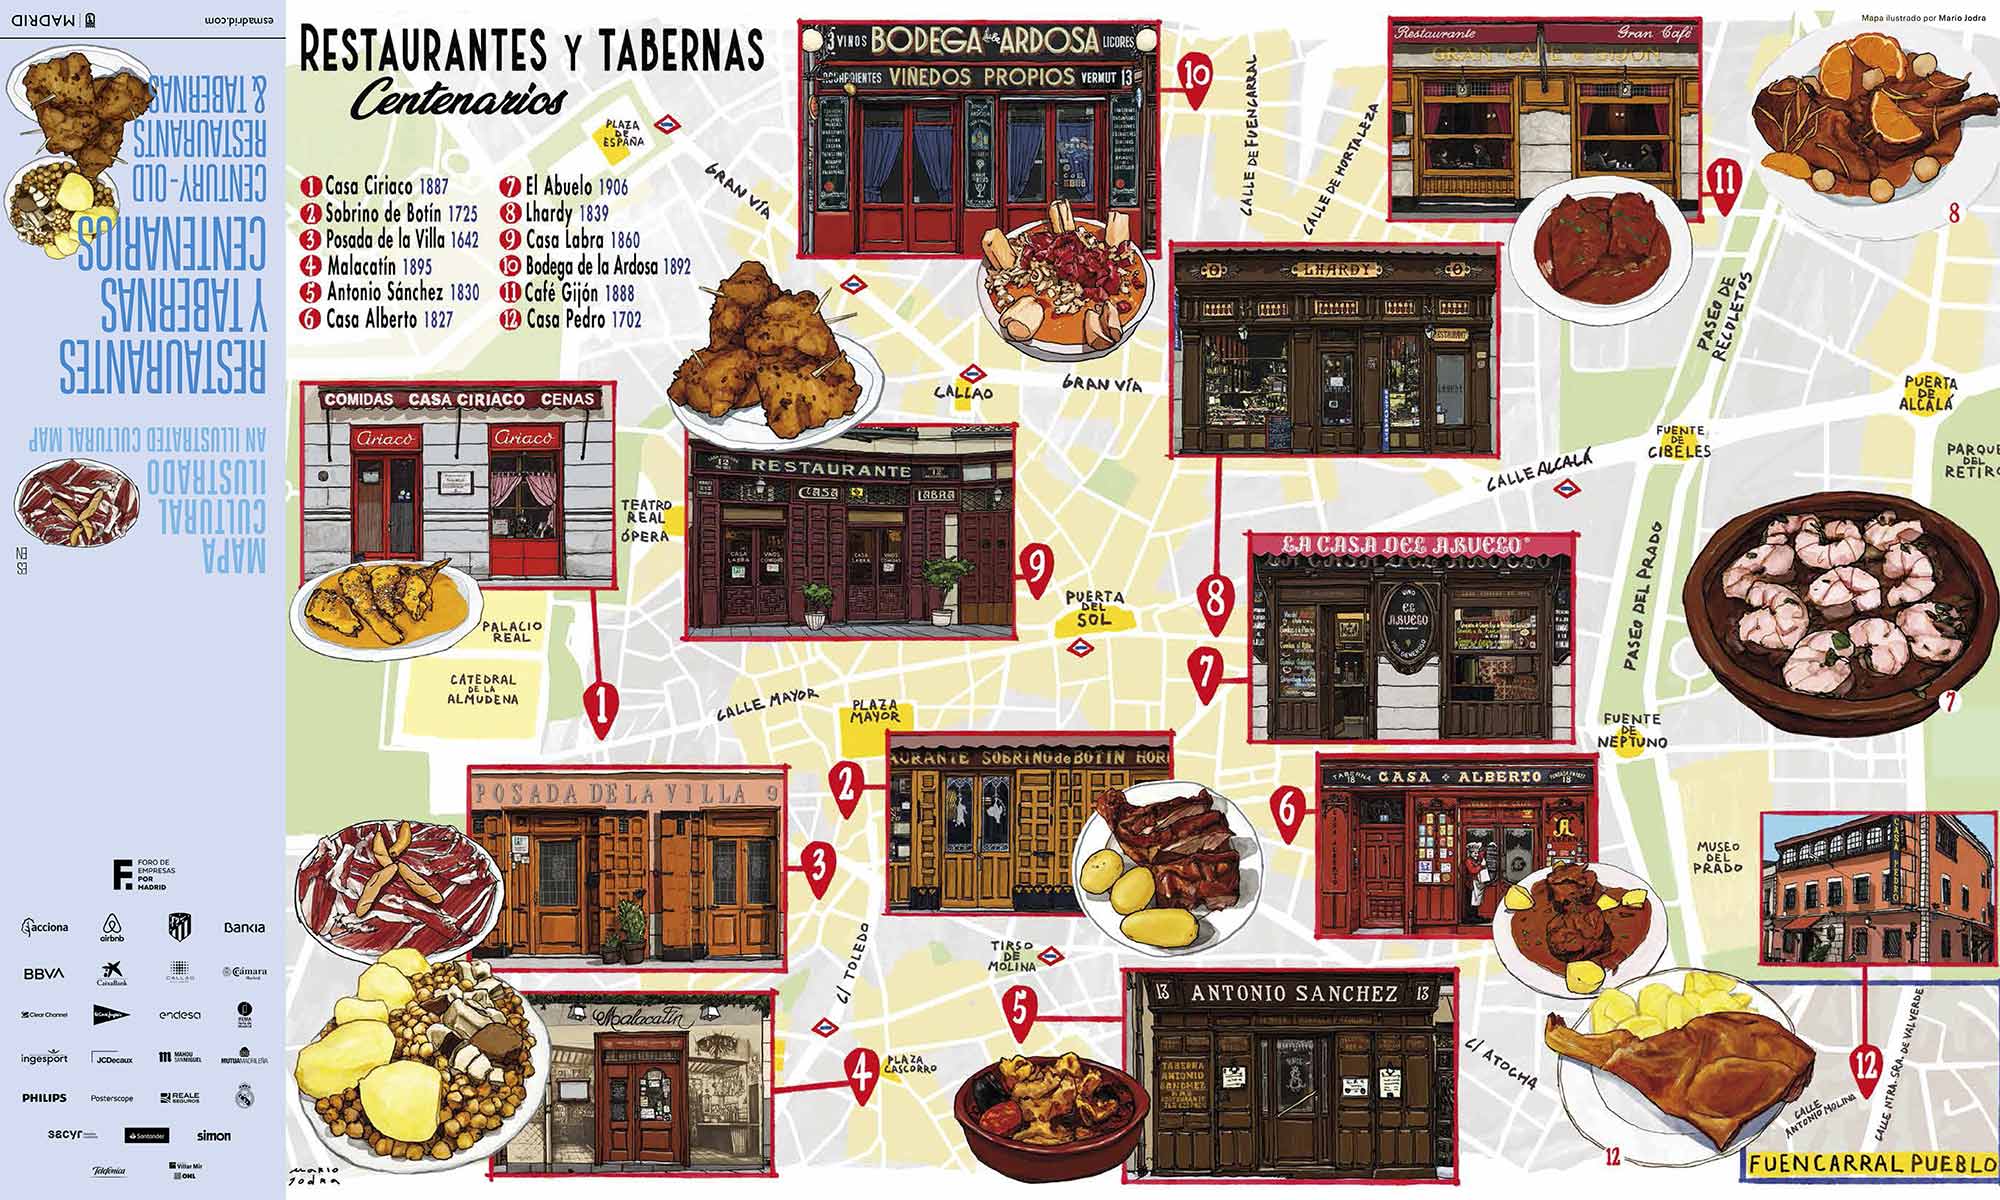 Mario Jodra illustration Art - Mapa Restaurantes Centenarios Madrid